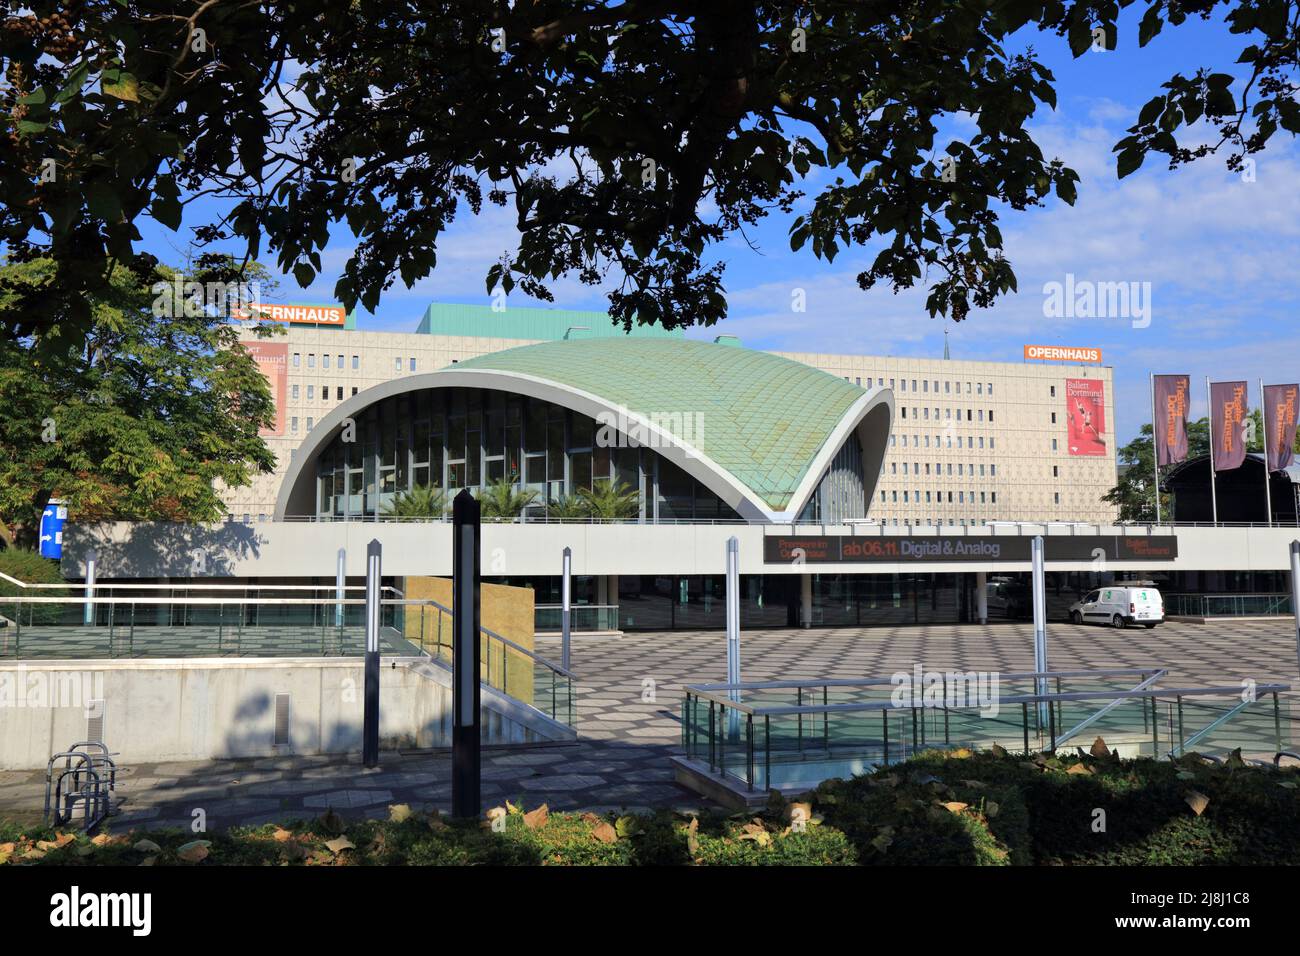 DORTMUND, DEUTSCHLAND - 16. SEPTEMBER 2020: Opernhaus Dortmund. Dortmund ist die größte Stadt im Ruhrgebiet Deutschlands. Stockfoto